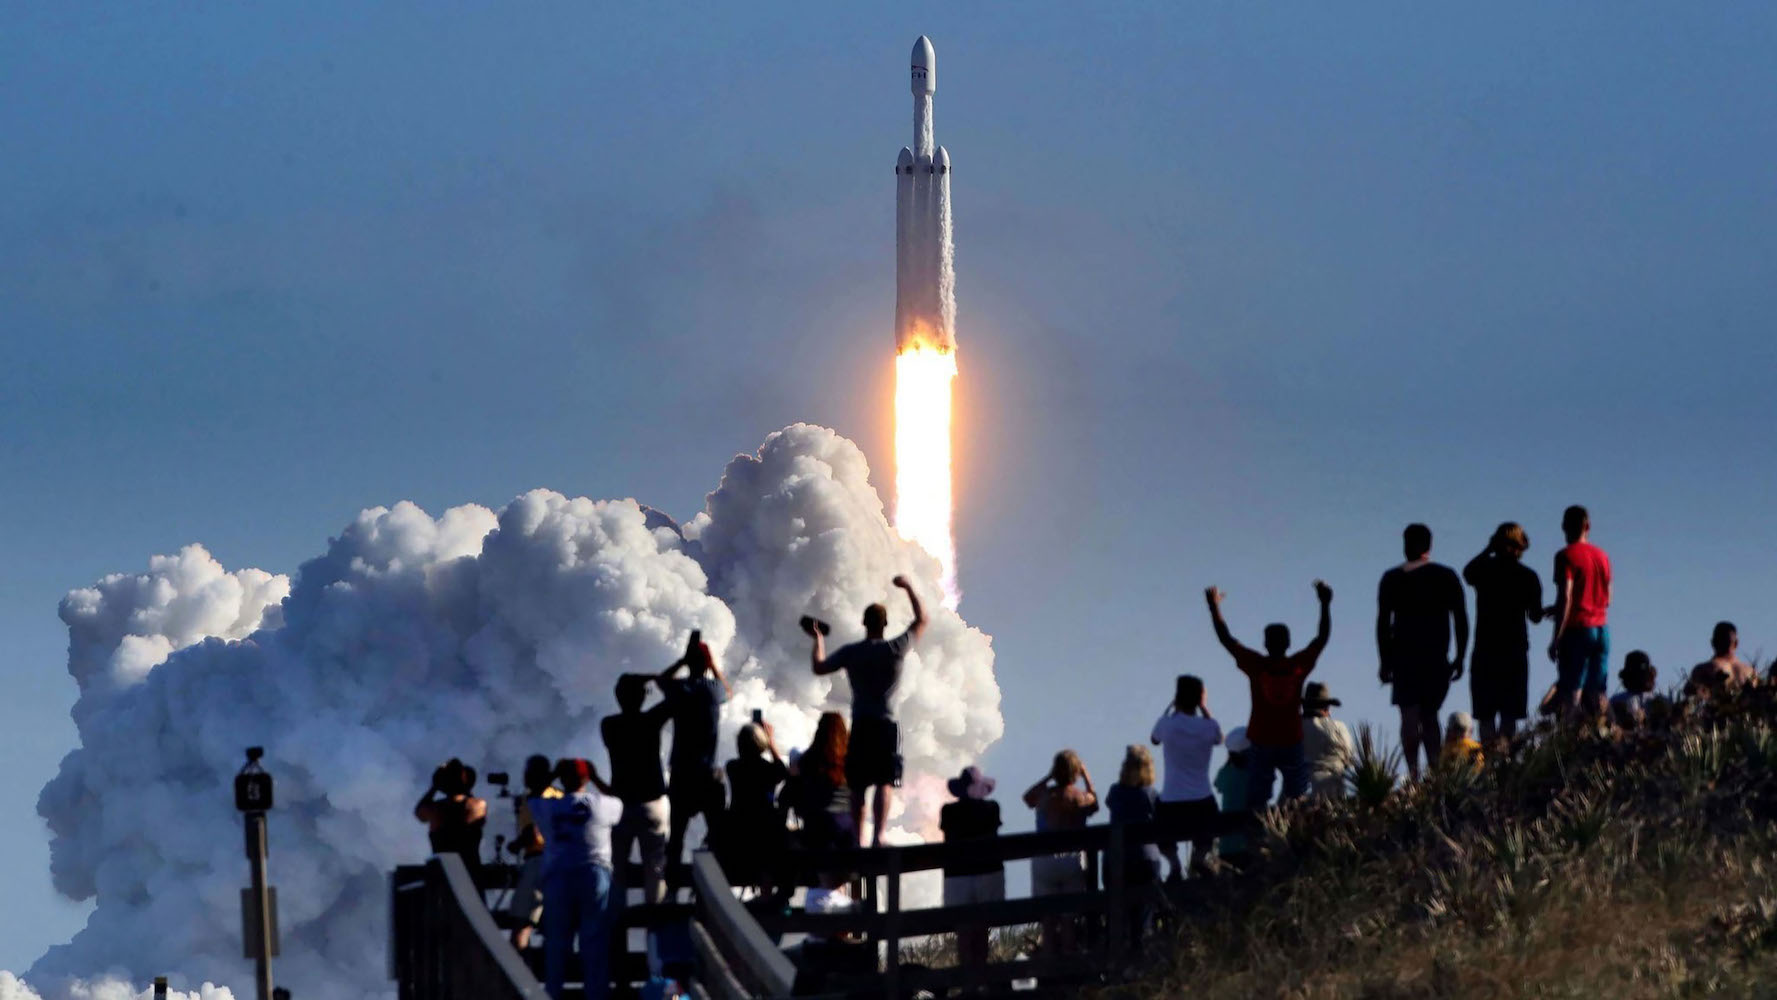 La multitud vitorea en Playalinda Beach en la costa nacional de Cañaveral, justo al norte del Centro Espacial Kennedy, durante el lanzamiento del cohete SpaceX Falcon Heavy, el 6 de febrero de 2018. Playalinda es uno de los puntos de observación pública más cercanos para ver el lanzamiento. a unas 3 millas de la plataforma de lanzamiento SpaceX 39-A.  (Joe Burbank/Orlando Sentinel/Tribune News Service vía Getty Images)